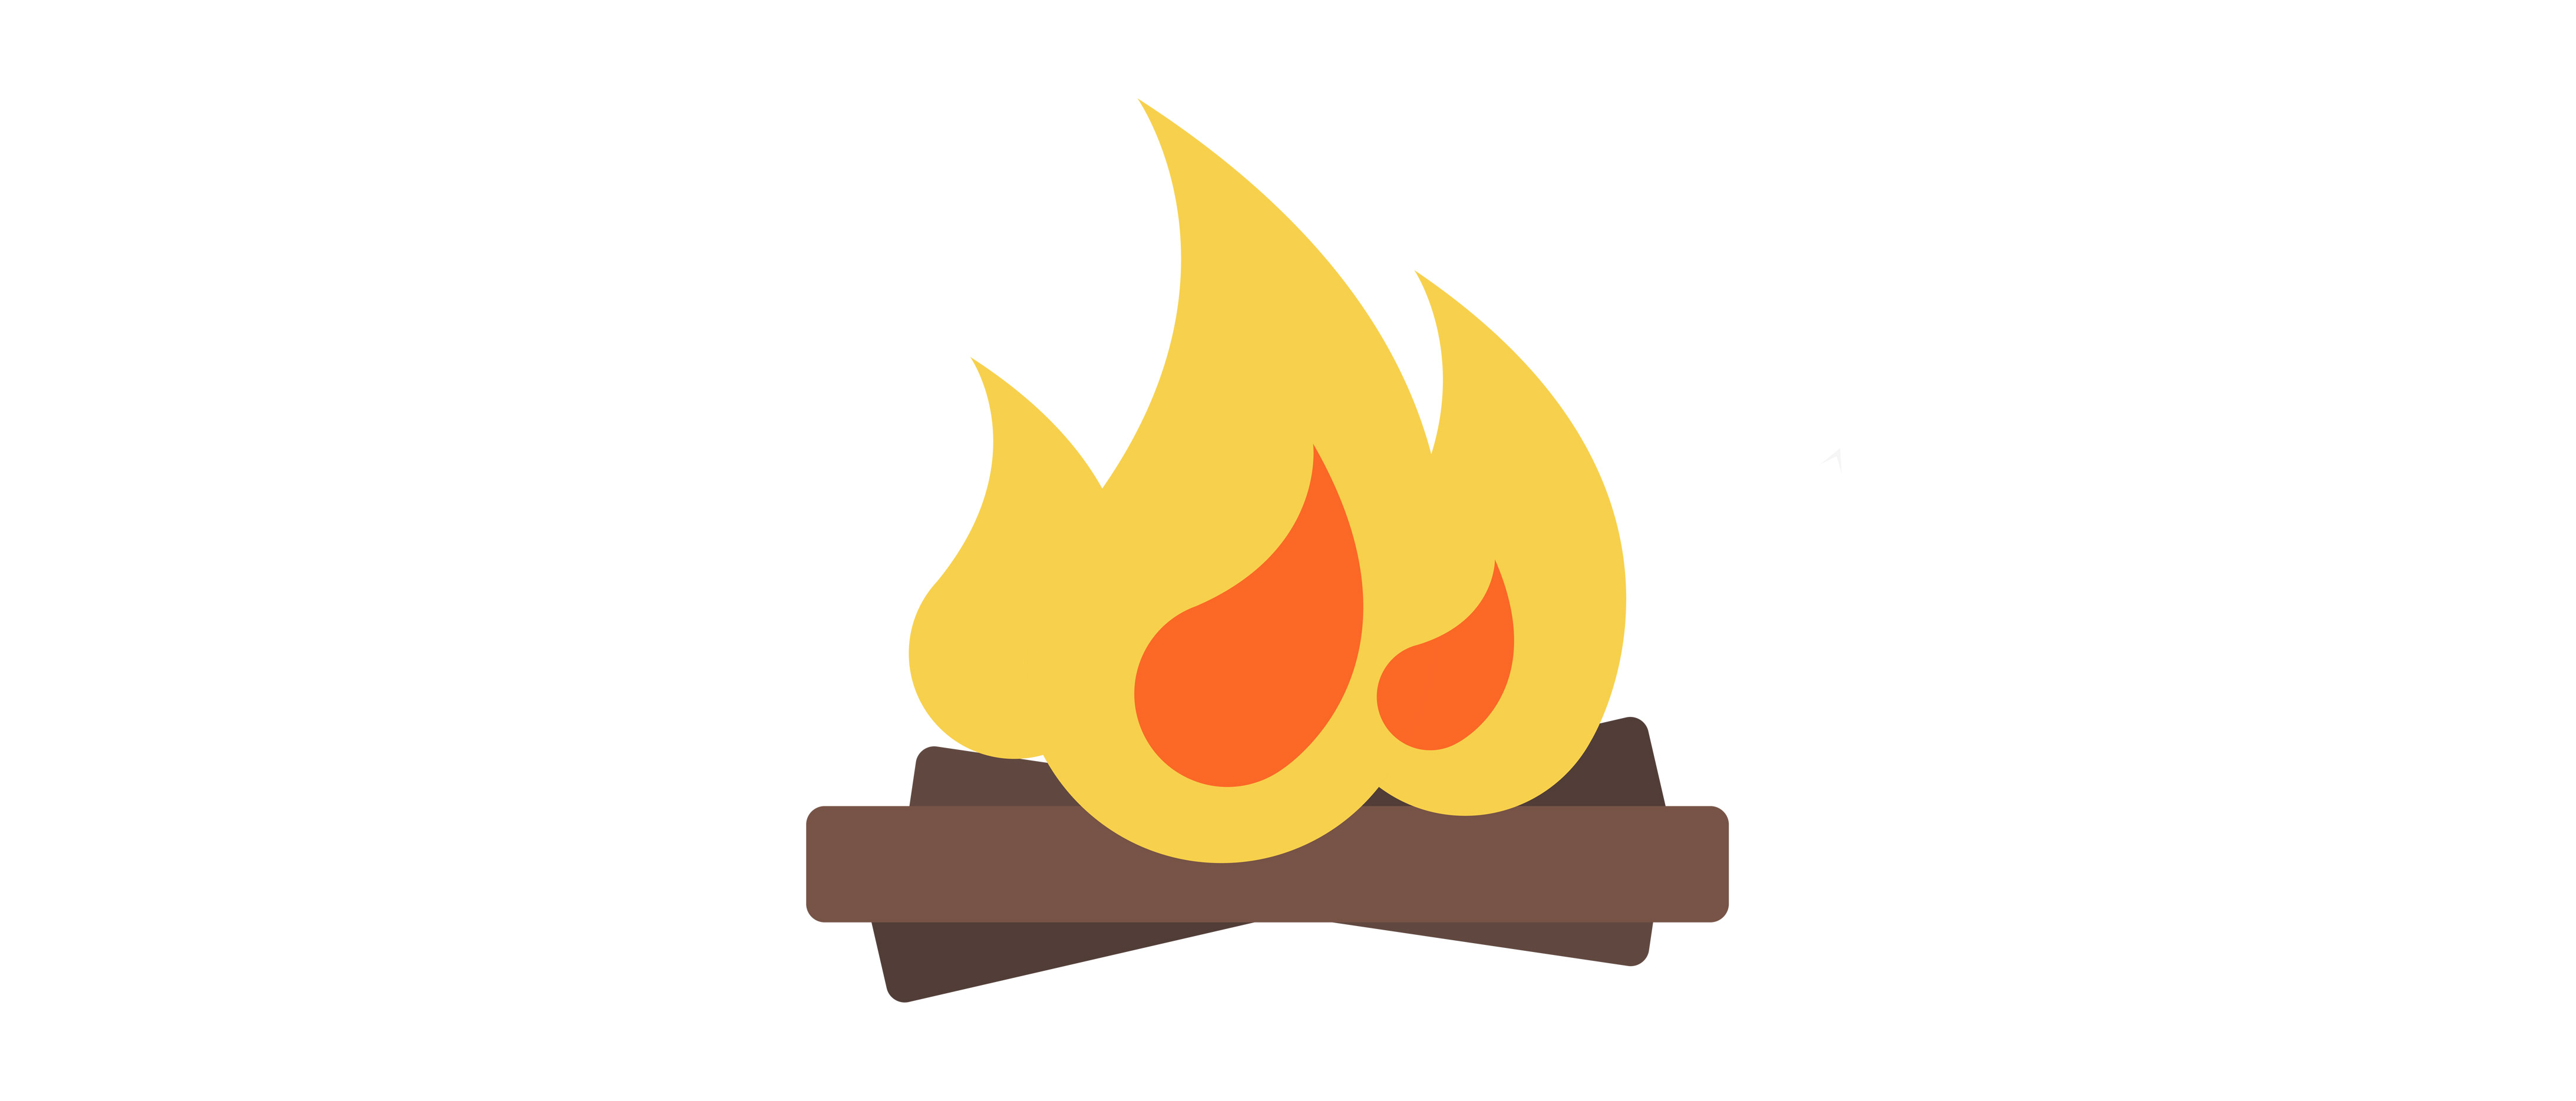 fire logs